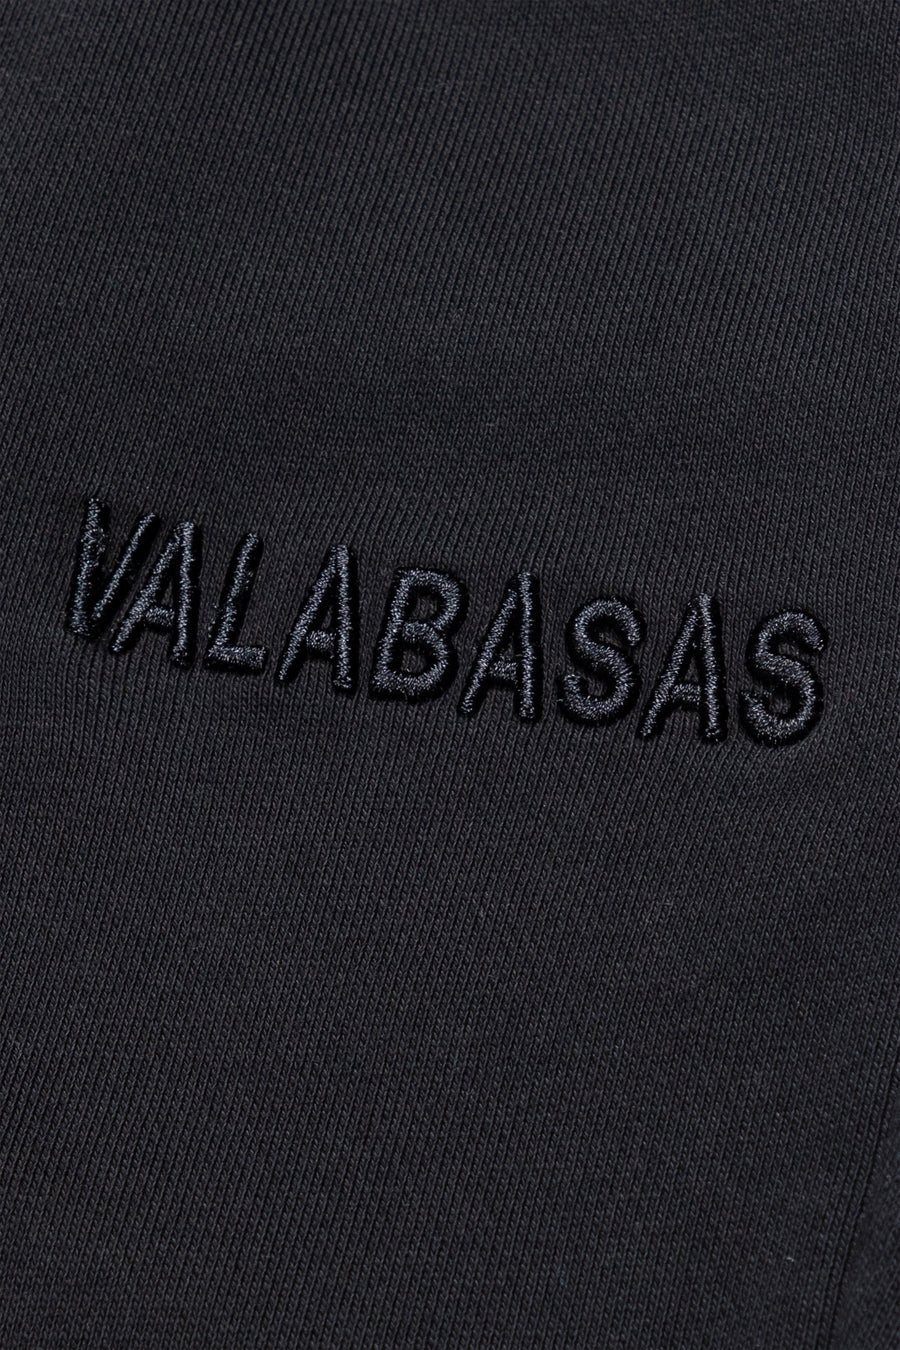 "VALA-ASCENT" VINTAGE BLACK FLEECE SET